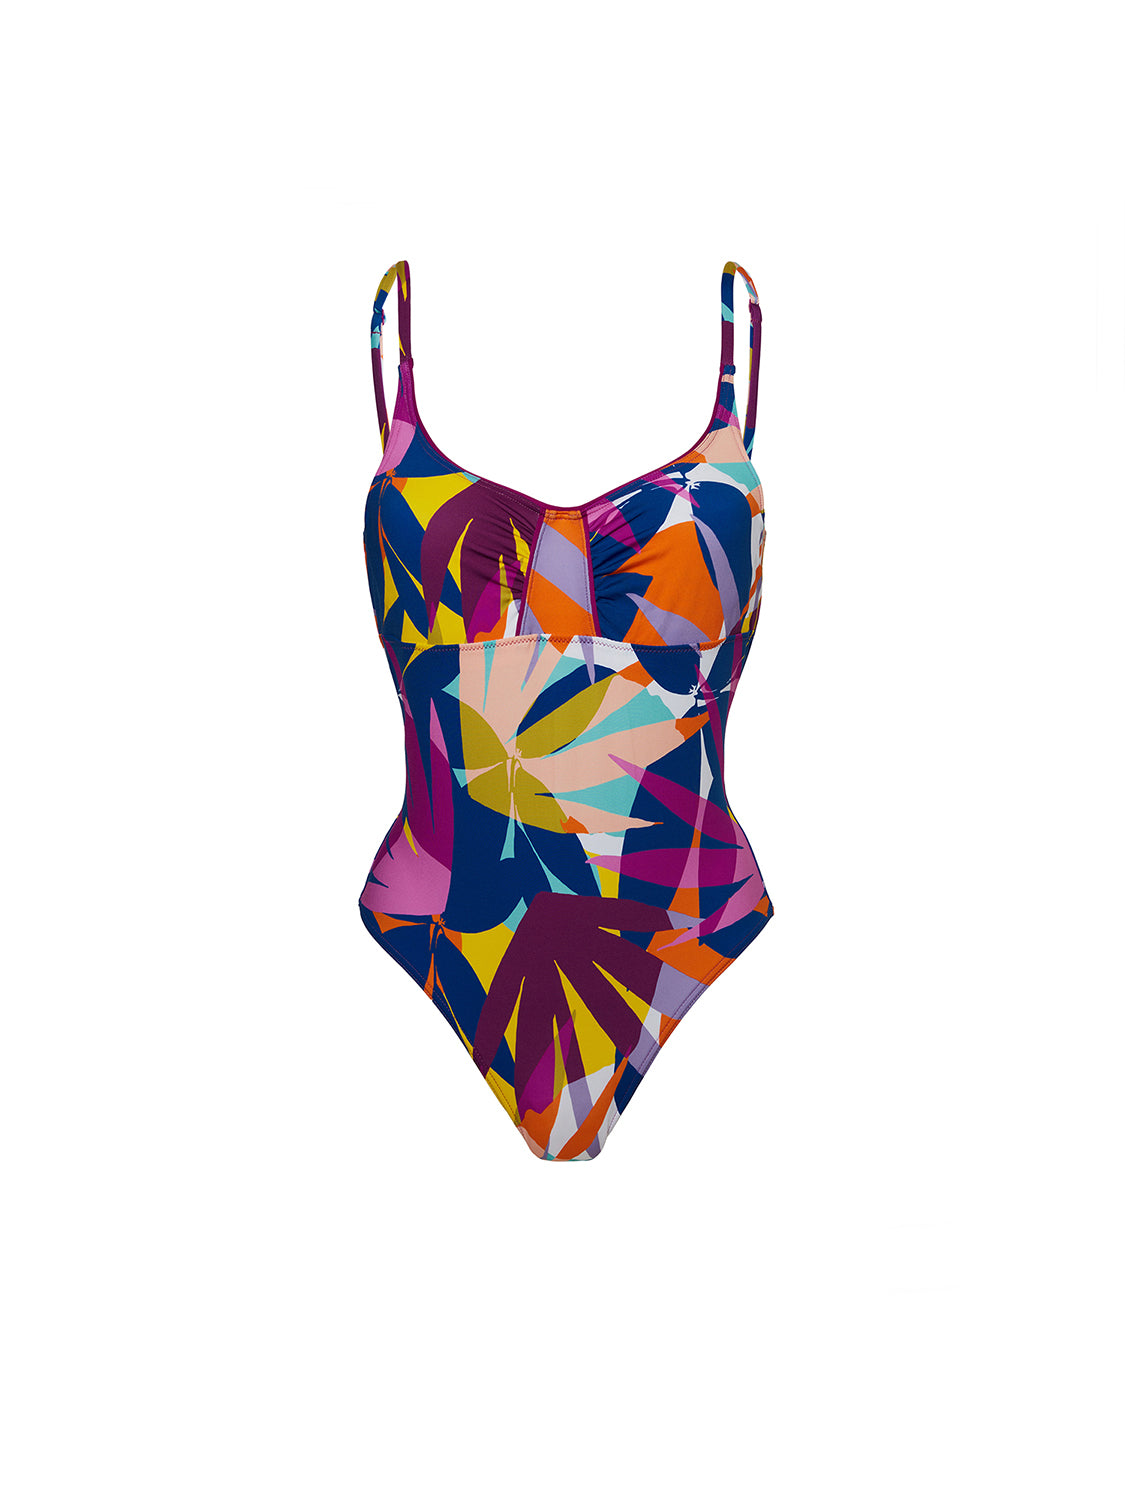 Underwired one-piece swimsuit - Palm Garden